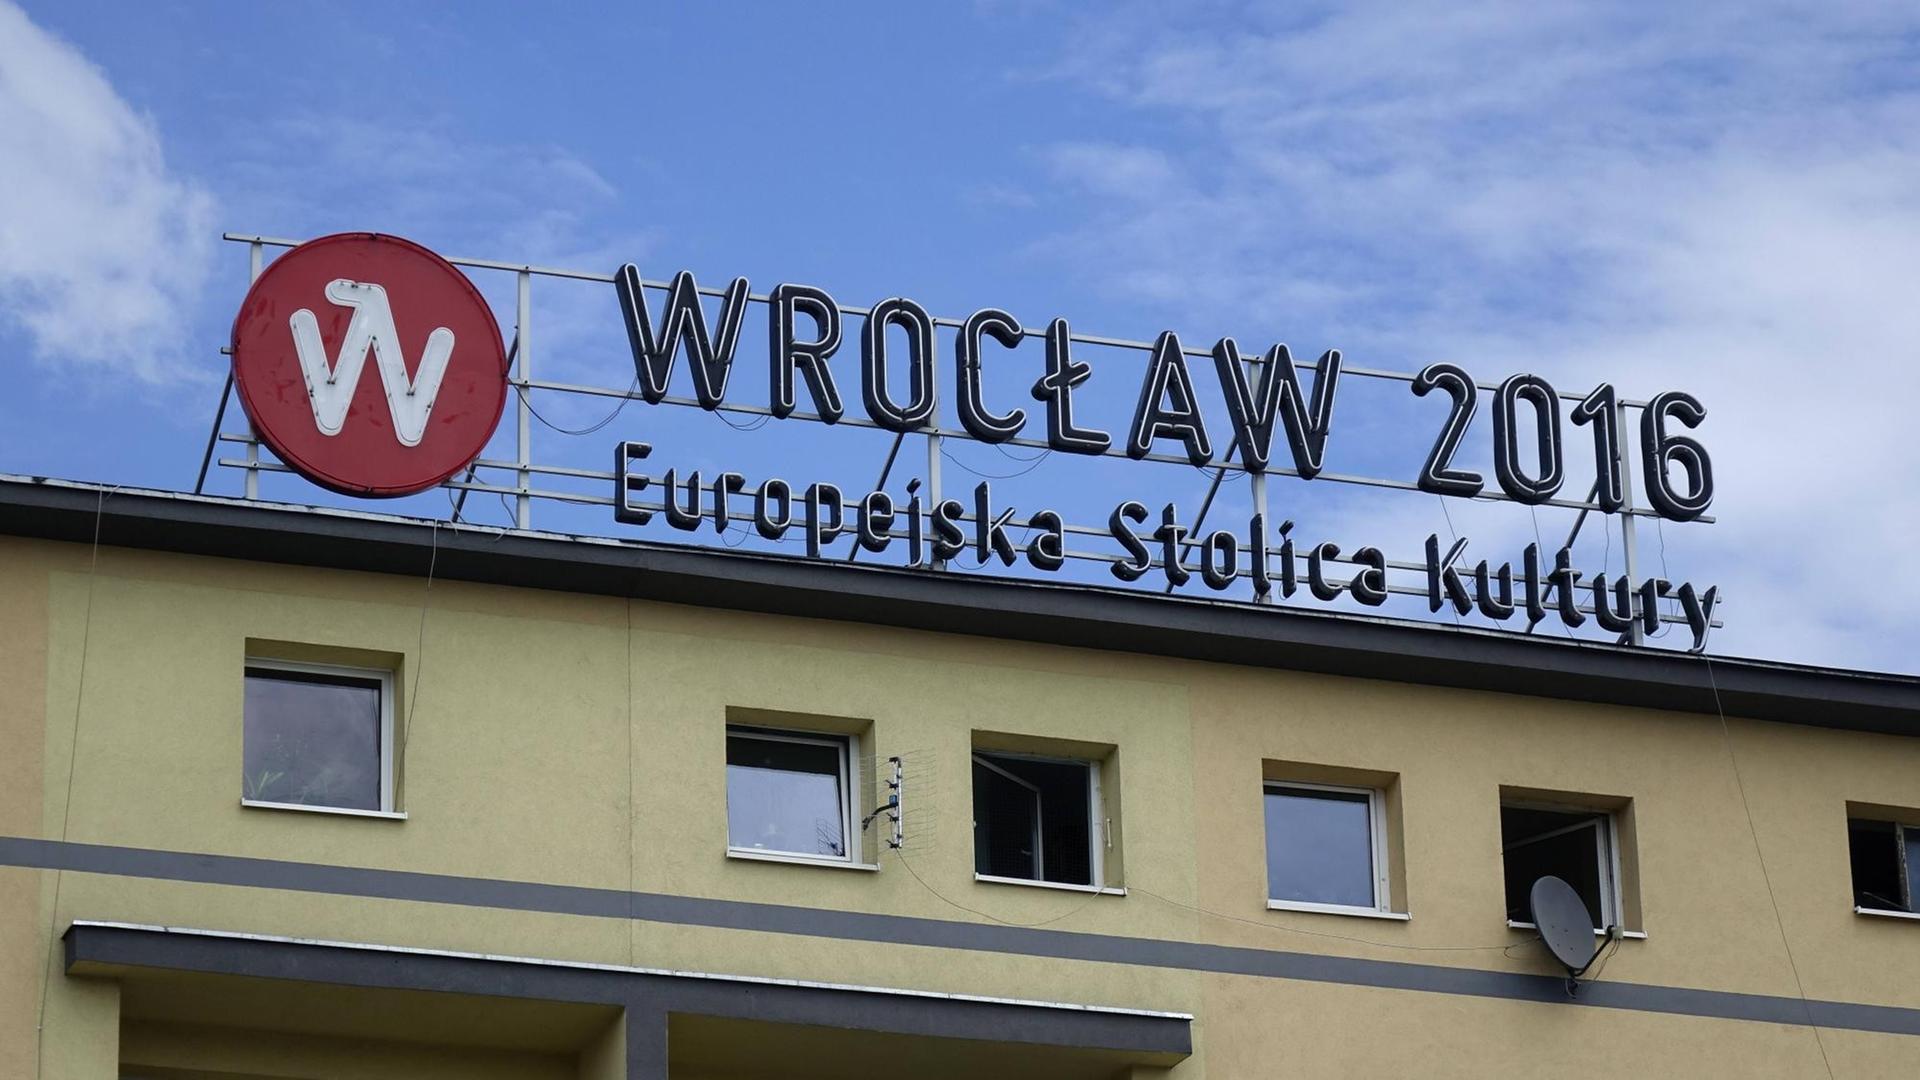 Reklame auf einem Haus für Breslau als europäische Kulturhauptstadt 2016.